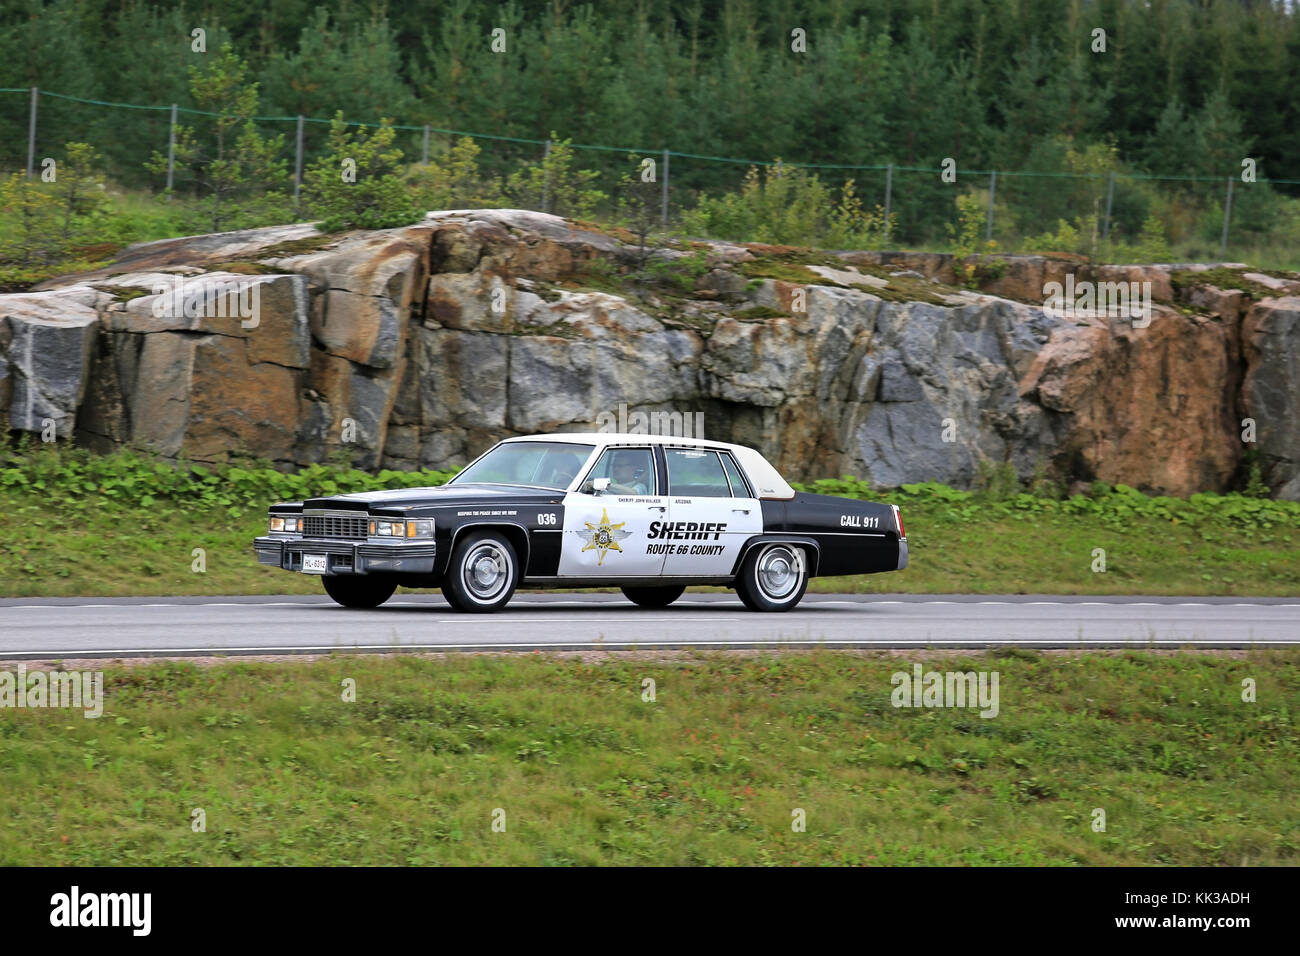 Paimio, Finlandia - 26 agosto 2016: cadillac automobile della polizia di arizona route 66 sceriffo si muove lungo la superstrada nel sud della Finlandia. Foto Stock